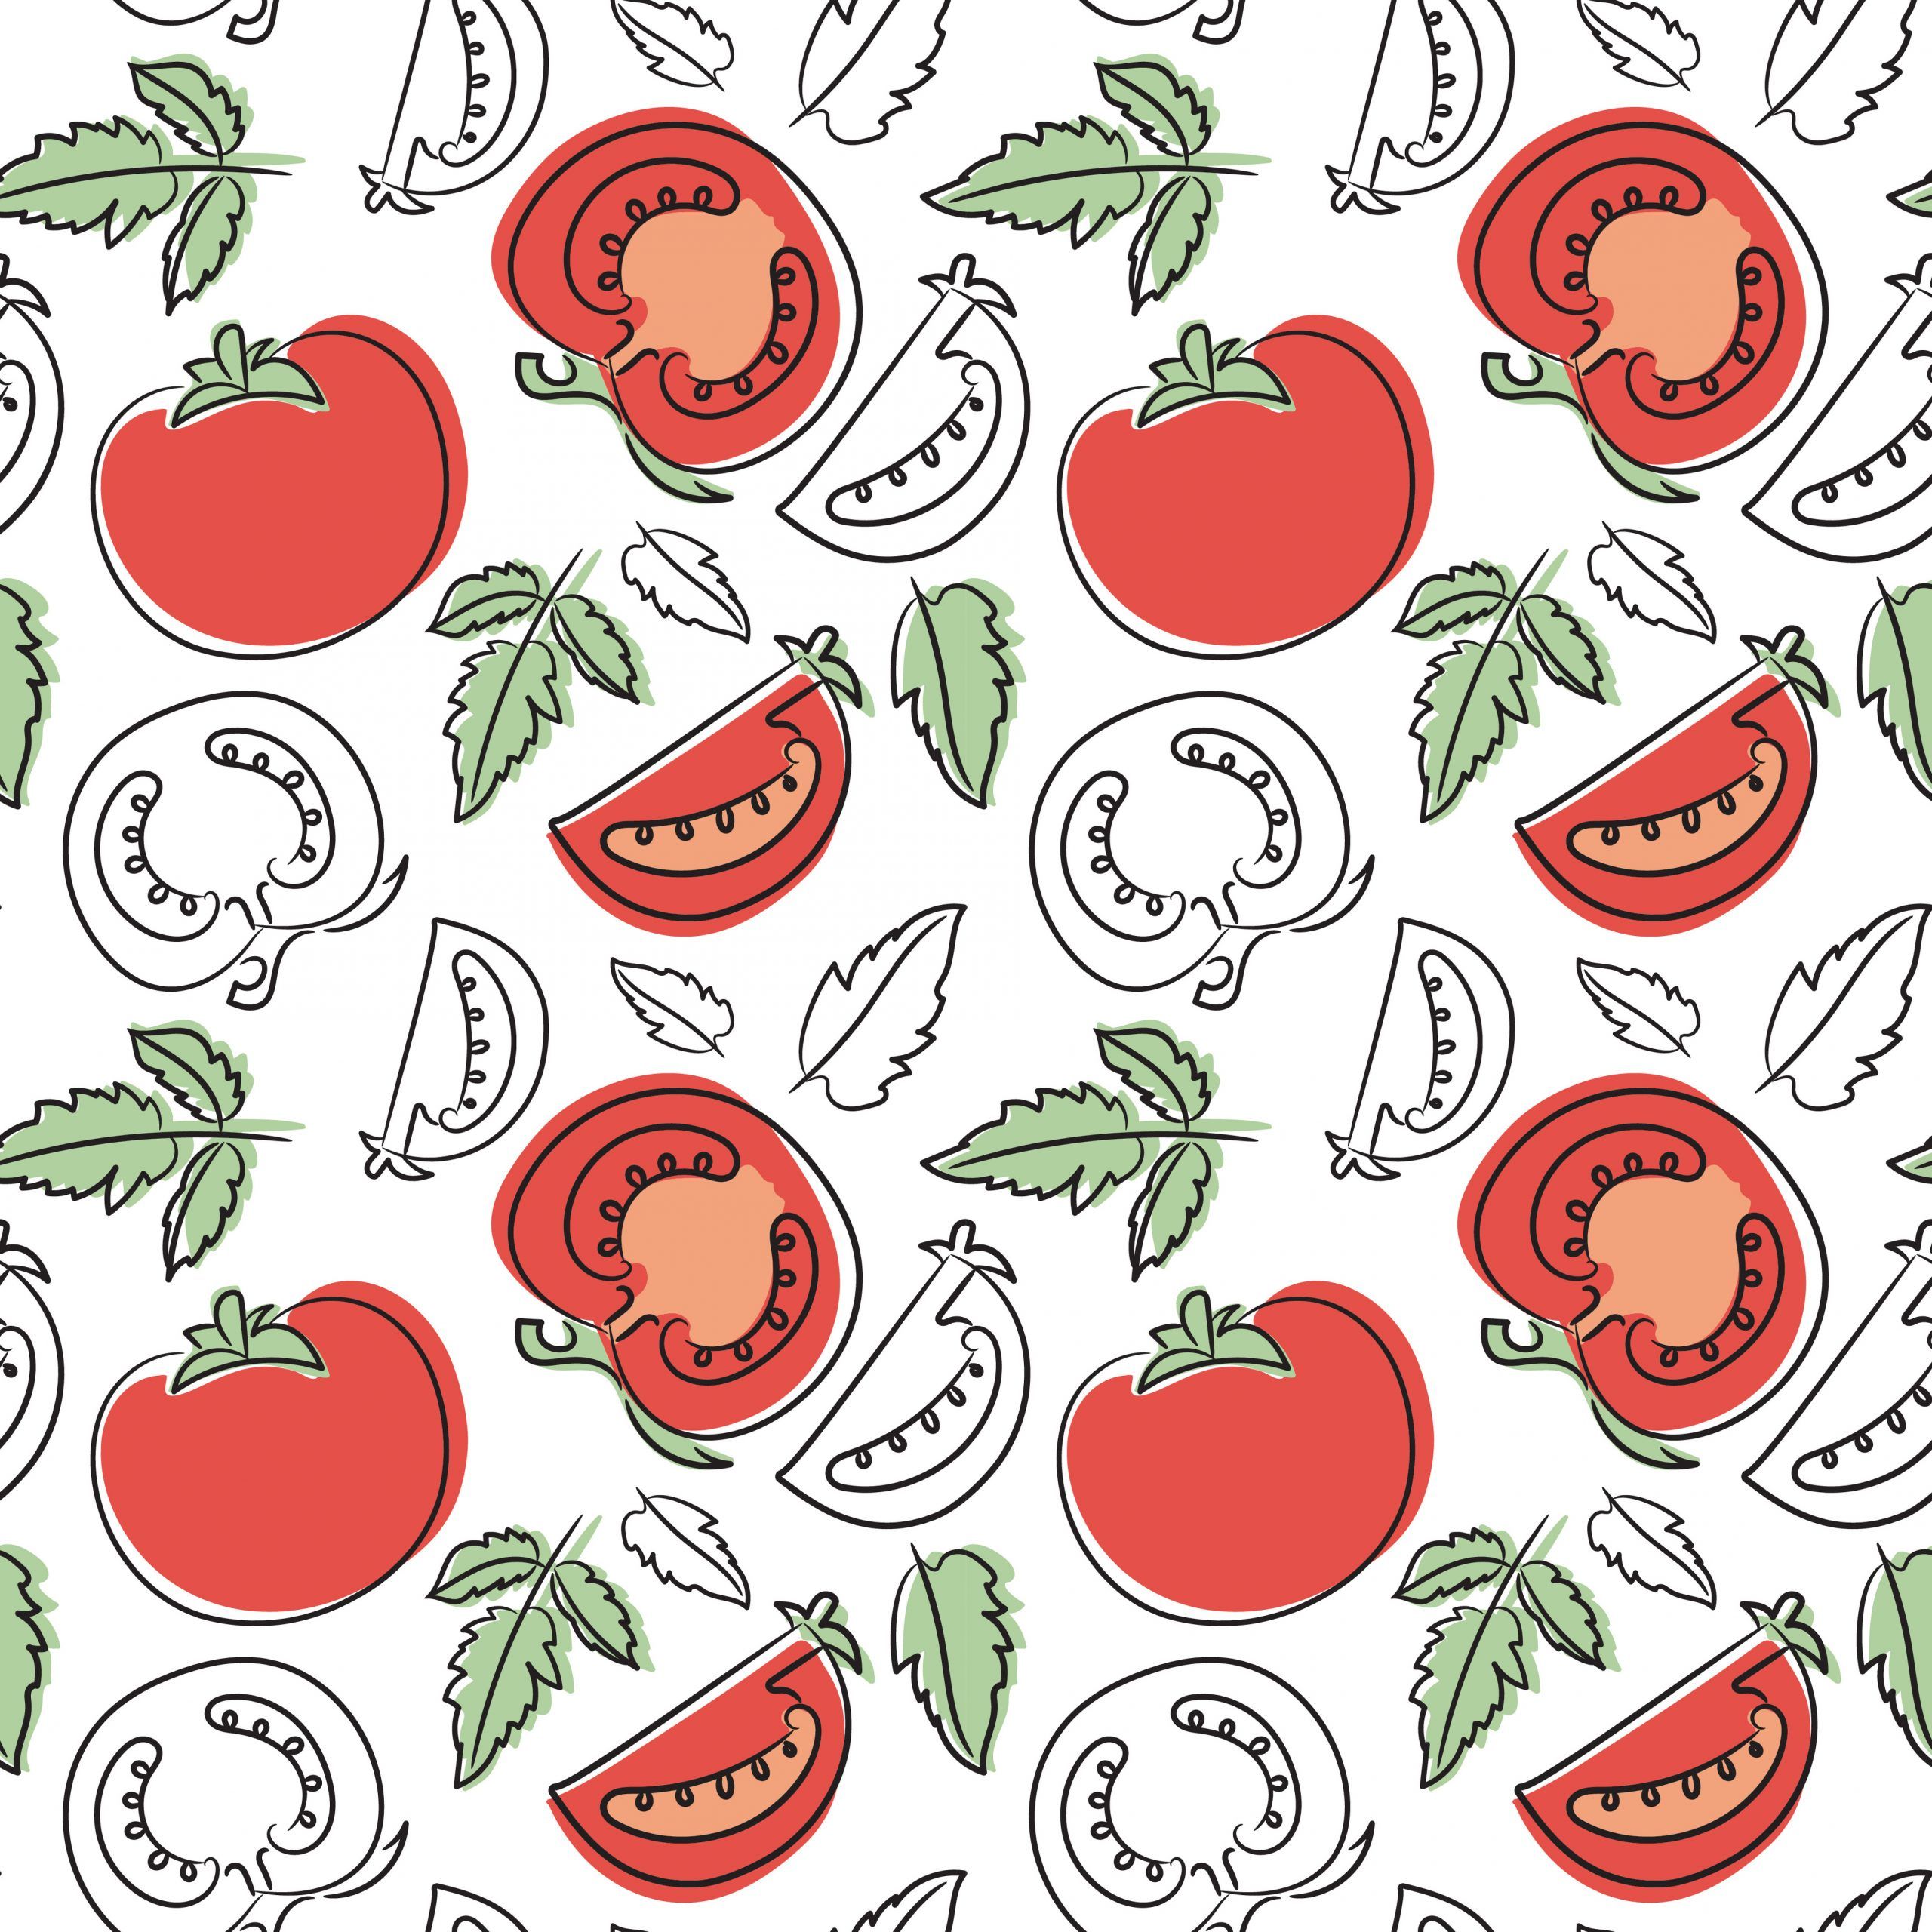 Tomato seamless pattern. Hand drawn